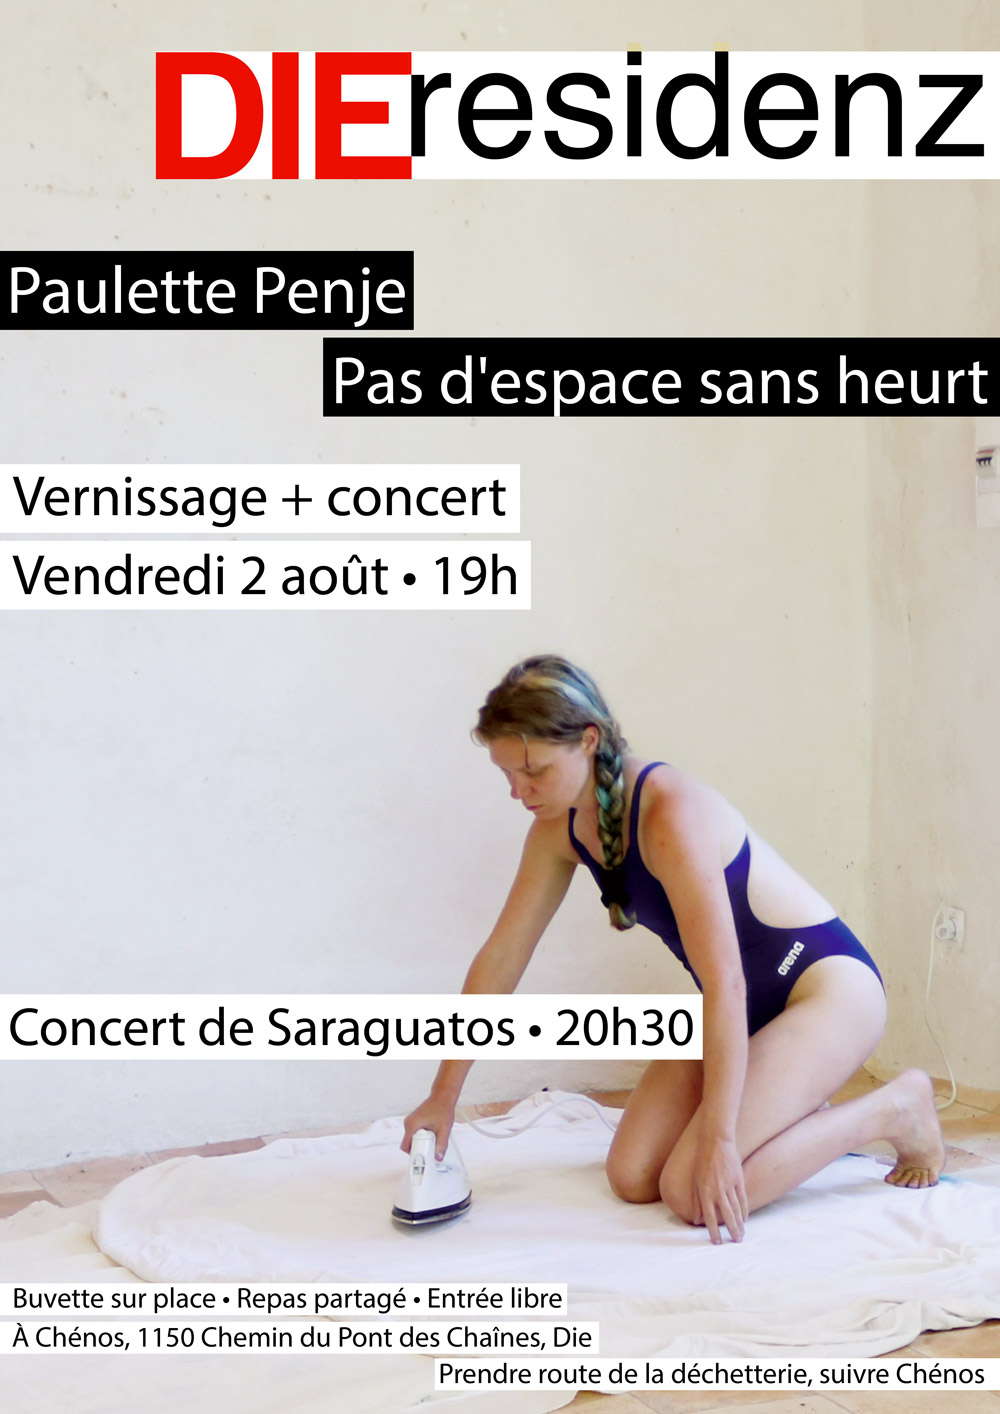 Exposition et Vernissage de Paulette Penje chez DIEresidenz